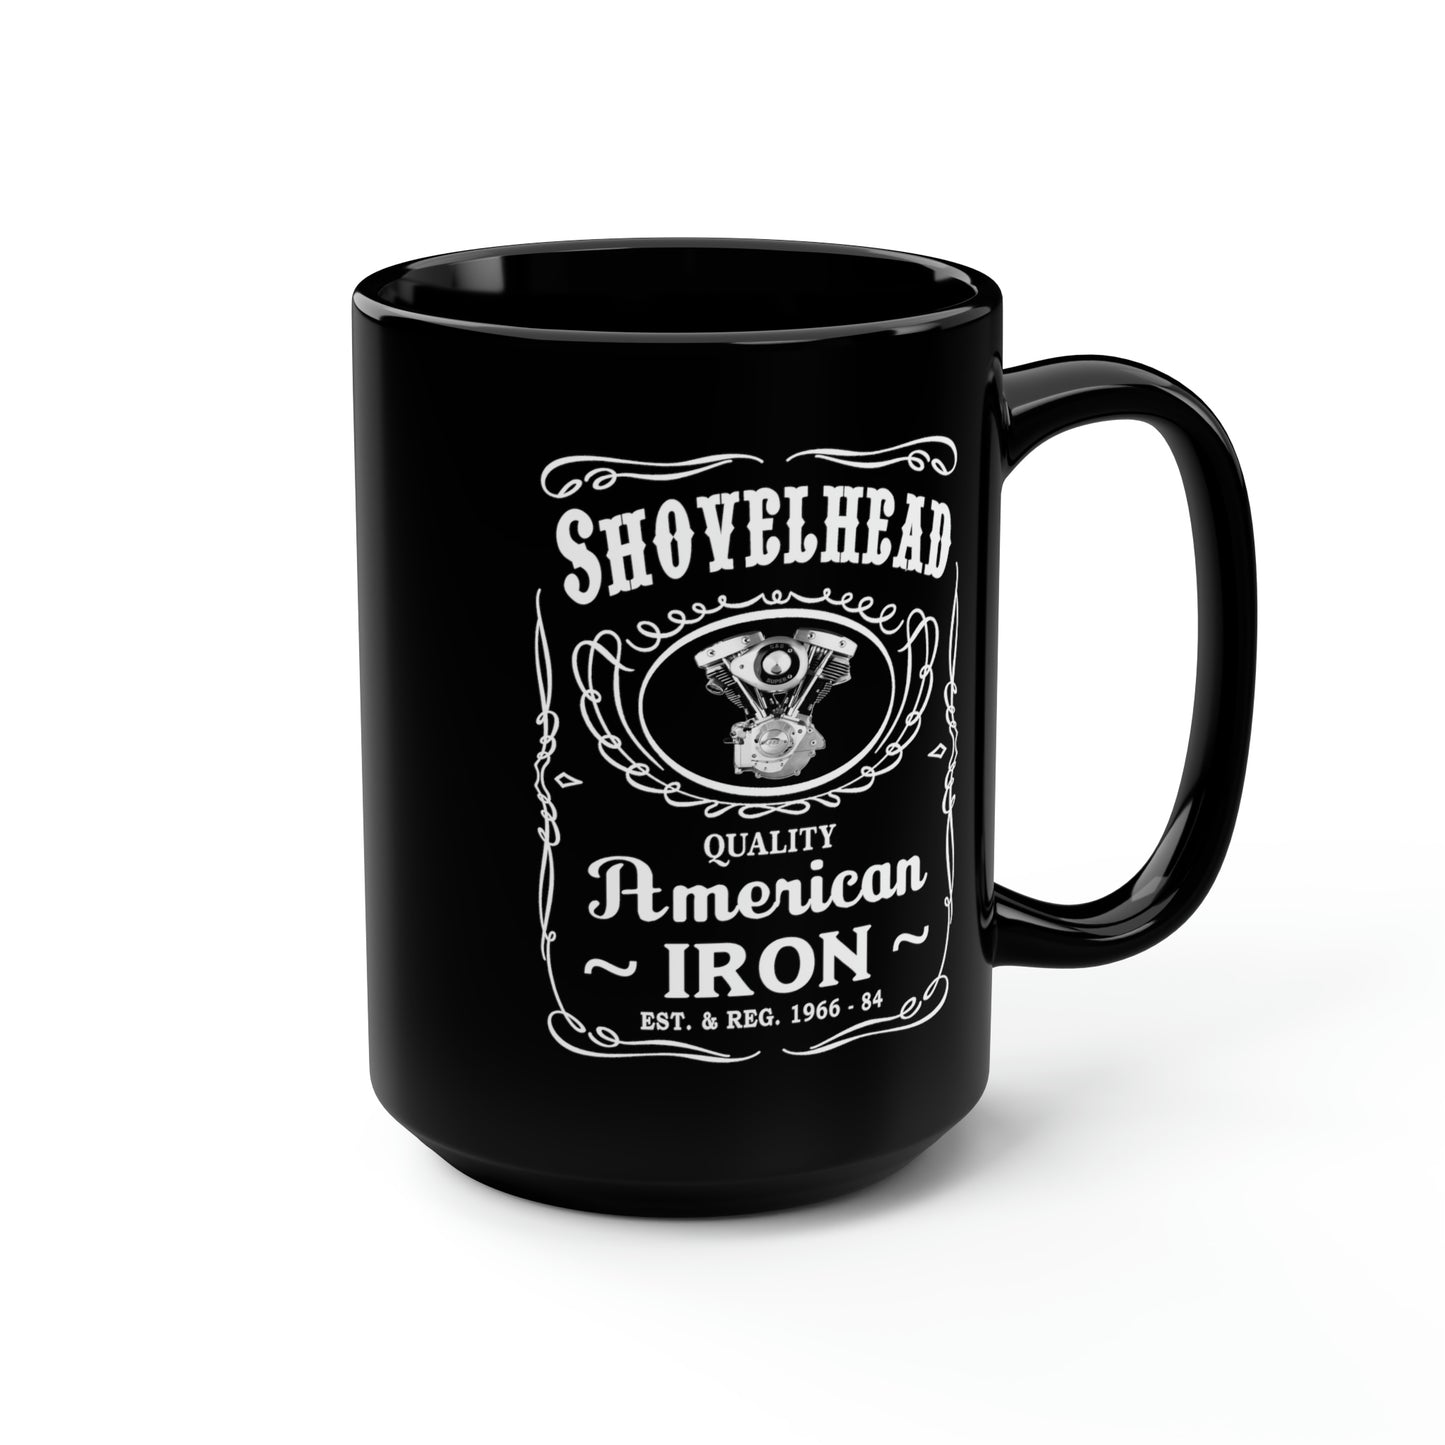 SHOVELHEAD 3 (JD CONE) Black Mug, 15oz